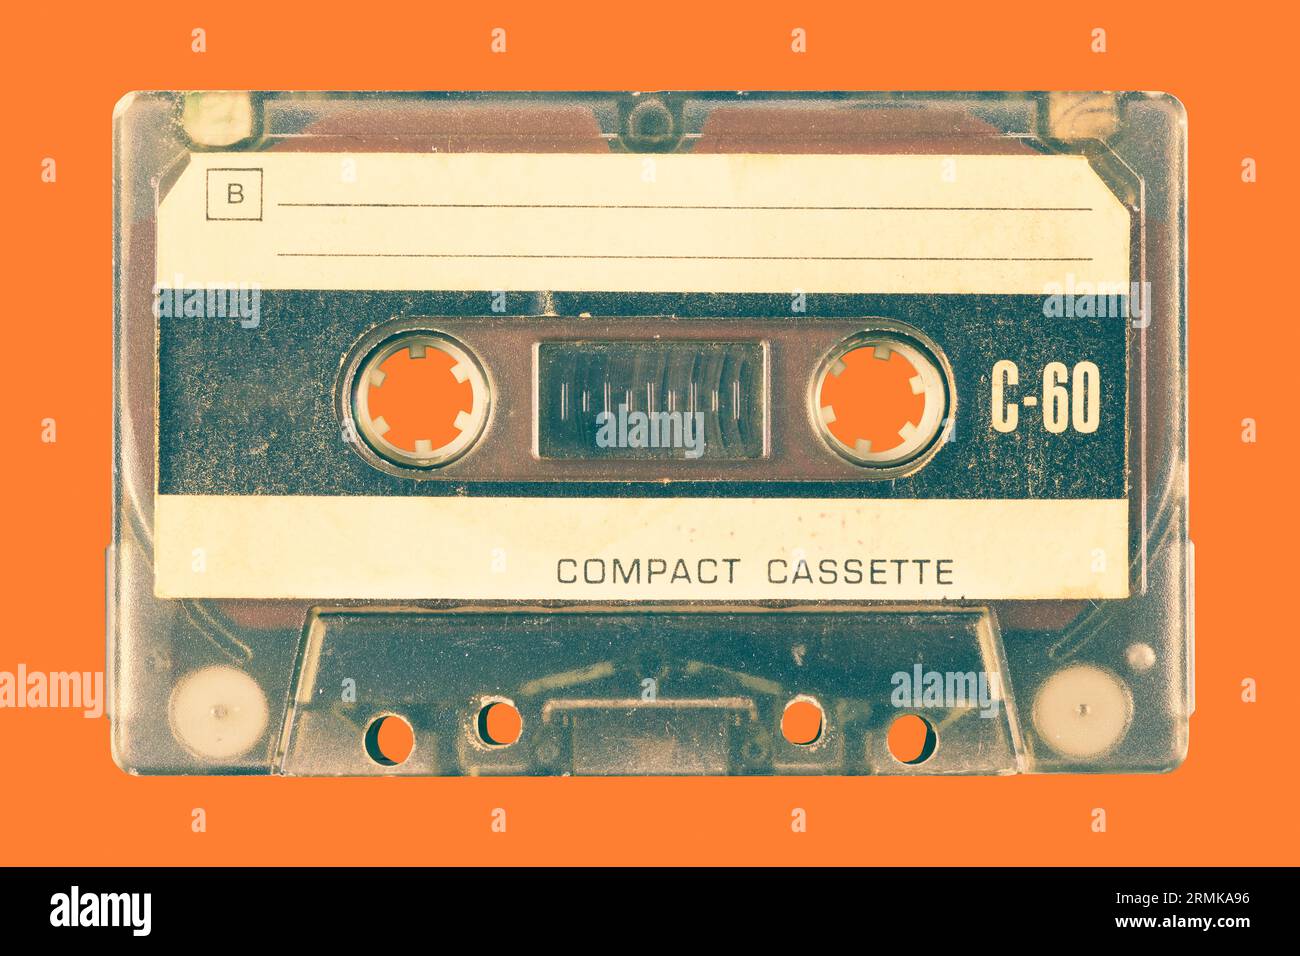 Ancienne cassette compacte audio vintage devant un fond orange Banque D'Images